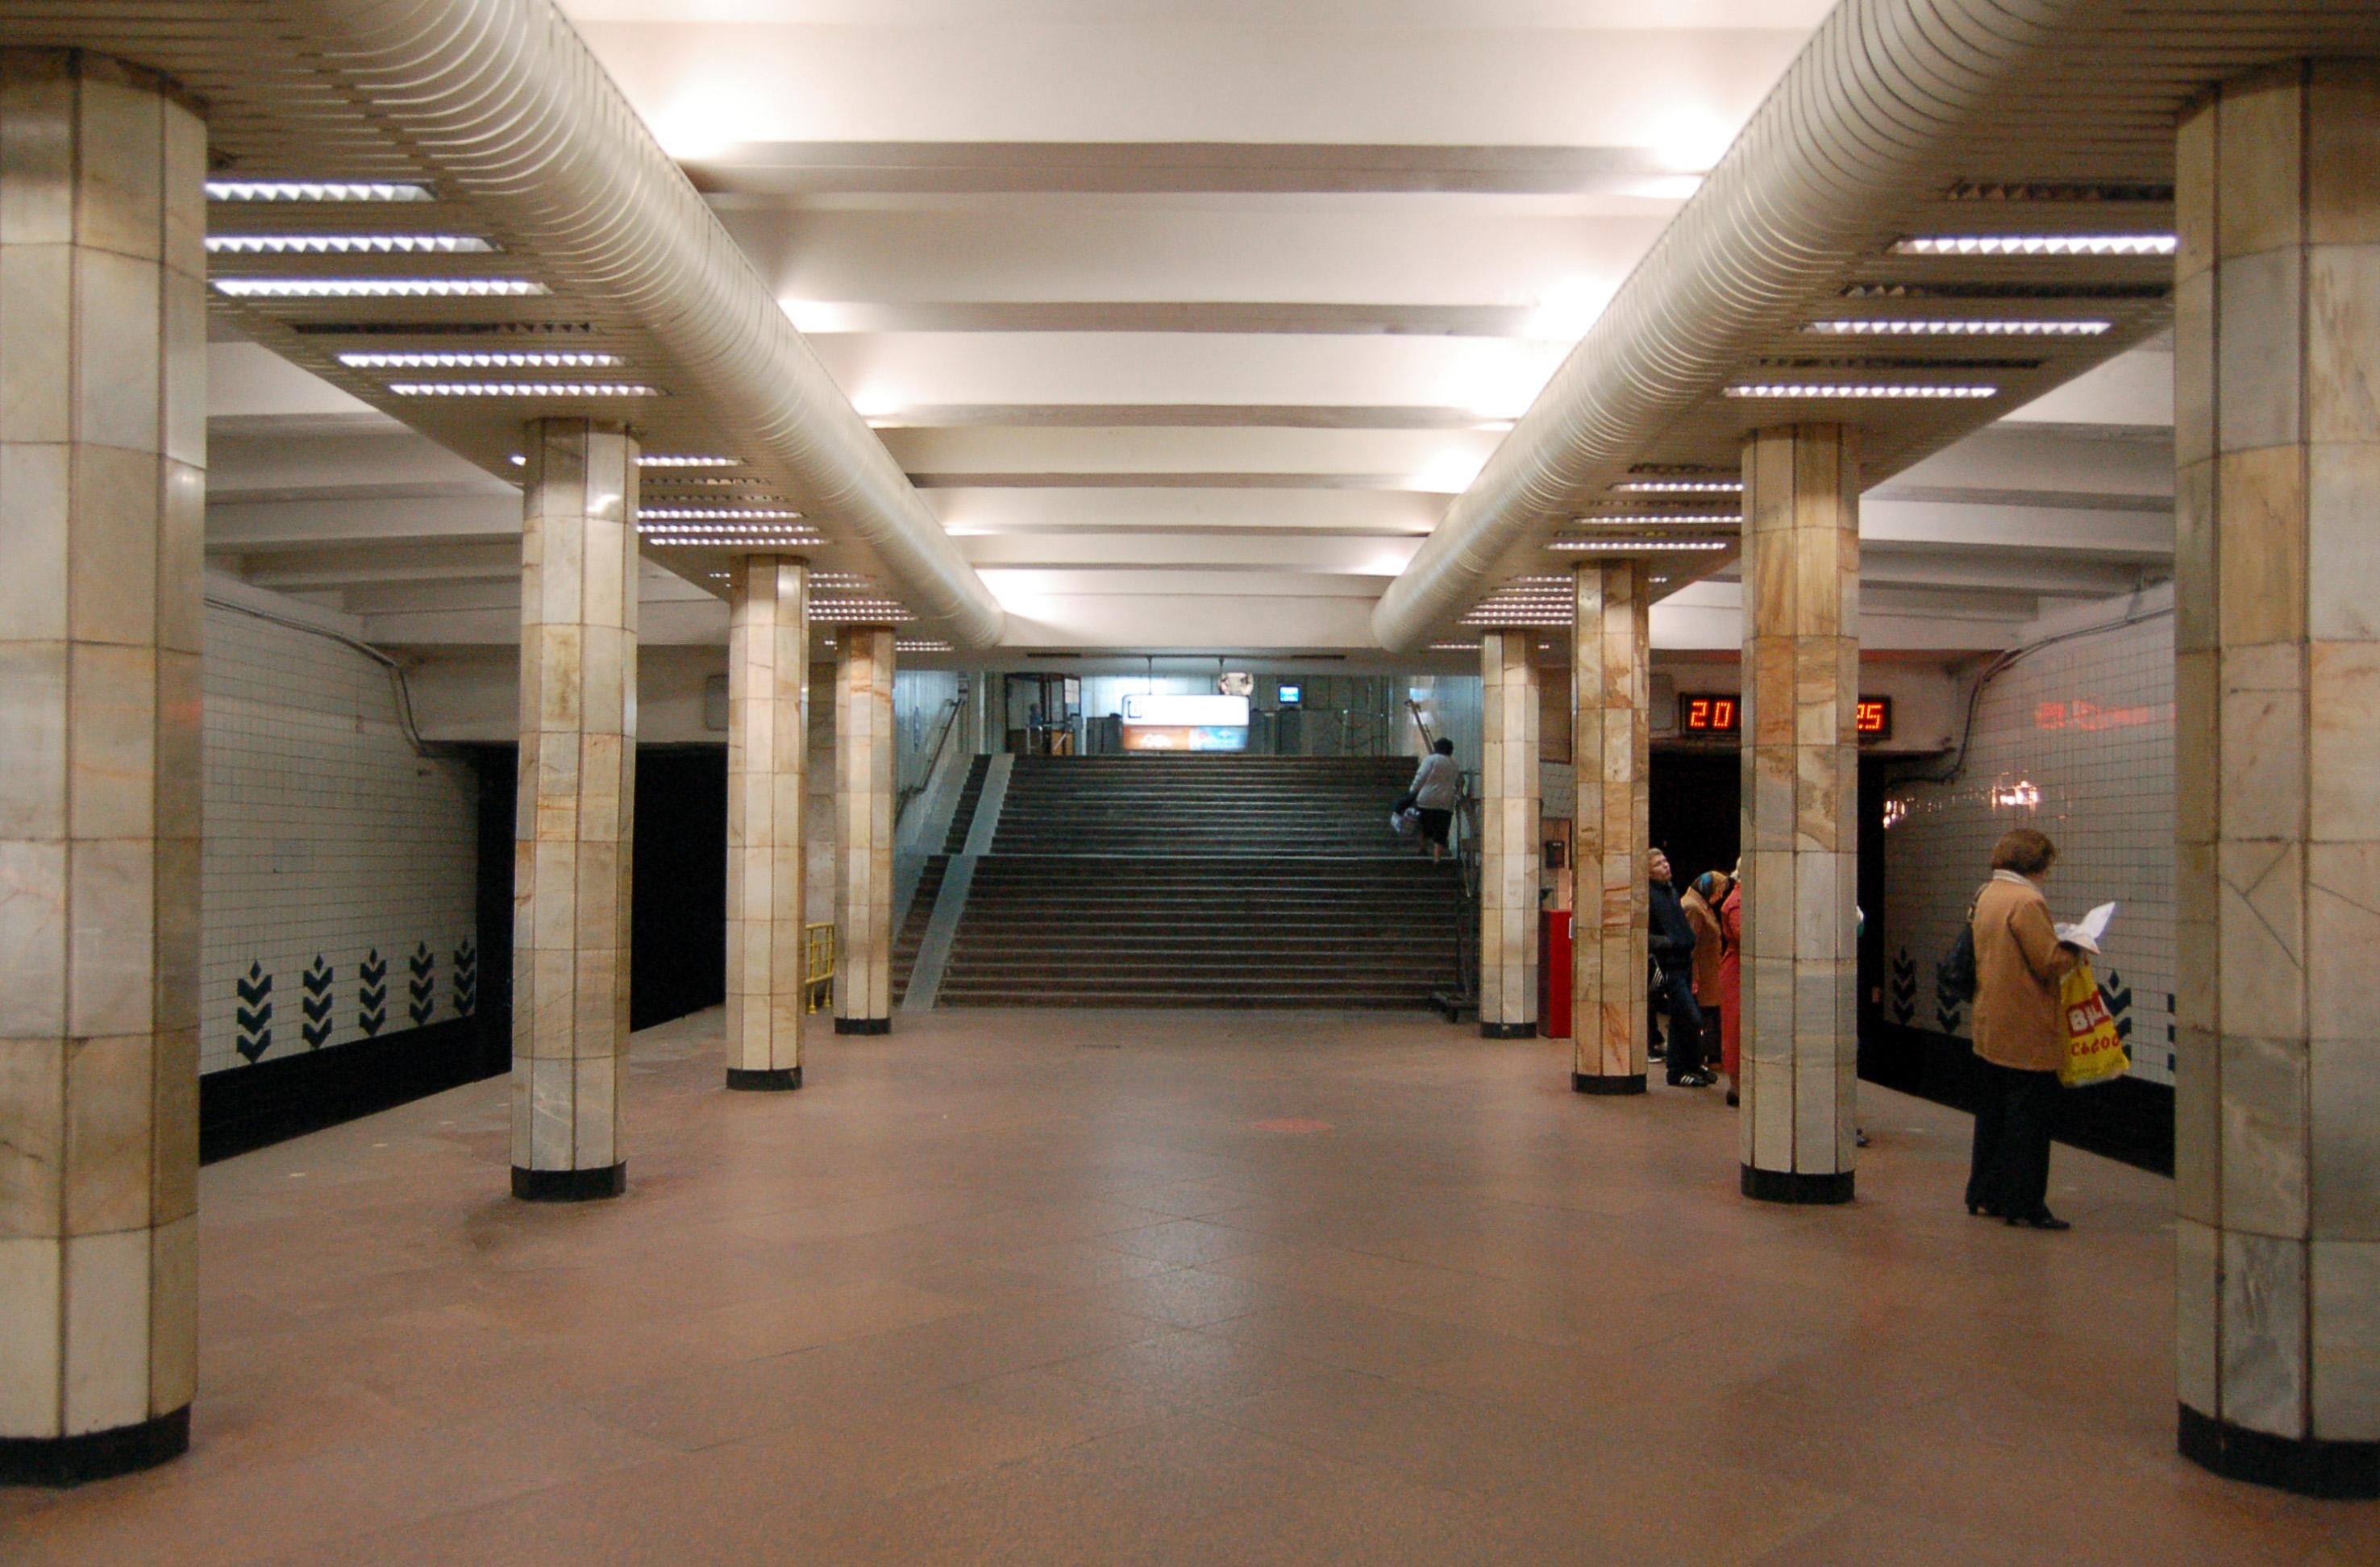 Як працює "червона лінія" метро в Києві: частину станцій використовують як бомбосховище - 24 Канал